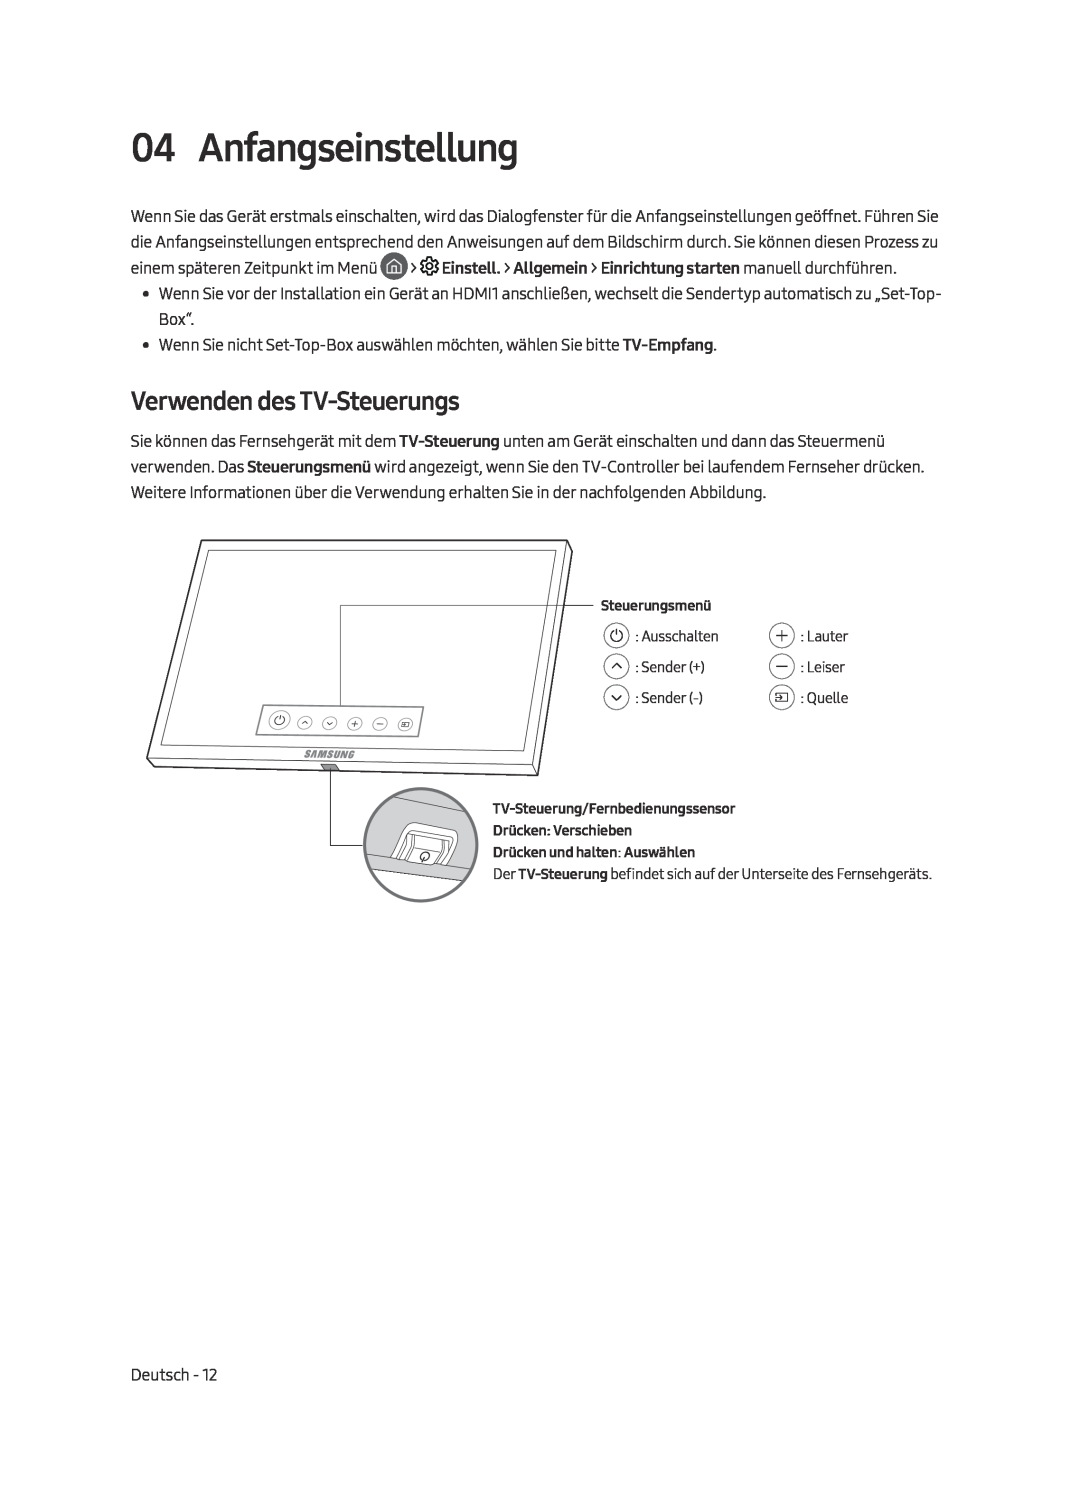 Samsung UE55MU9000TXZT, UE65MU9009TXZG, UE65MU9000TXZG, UE55MU9009TXZG manual Anfangseinstellung, Verwenden des TV-Steuerungs 